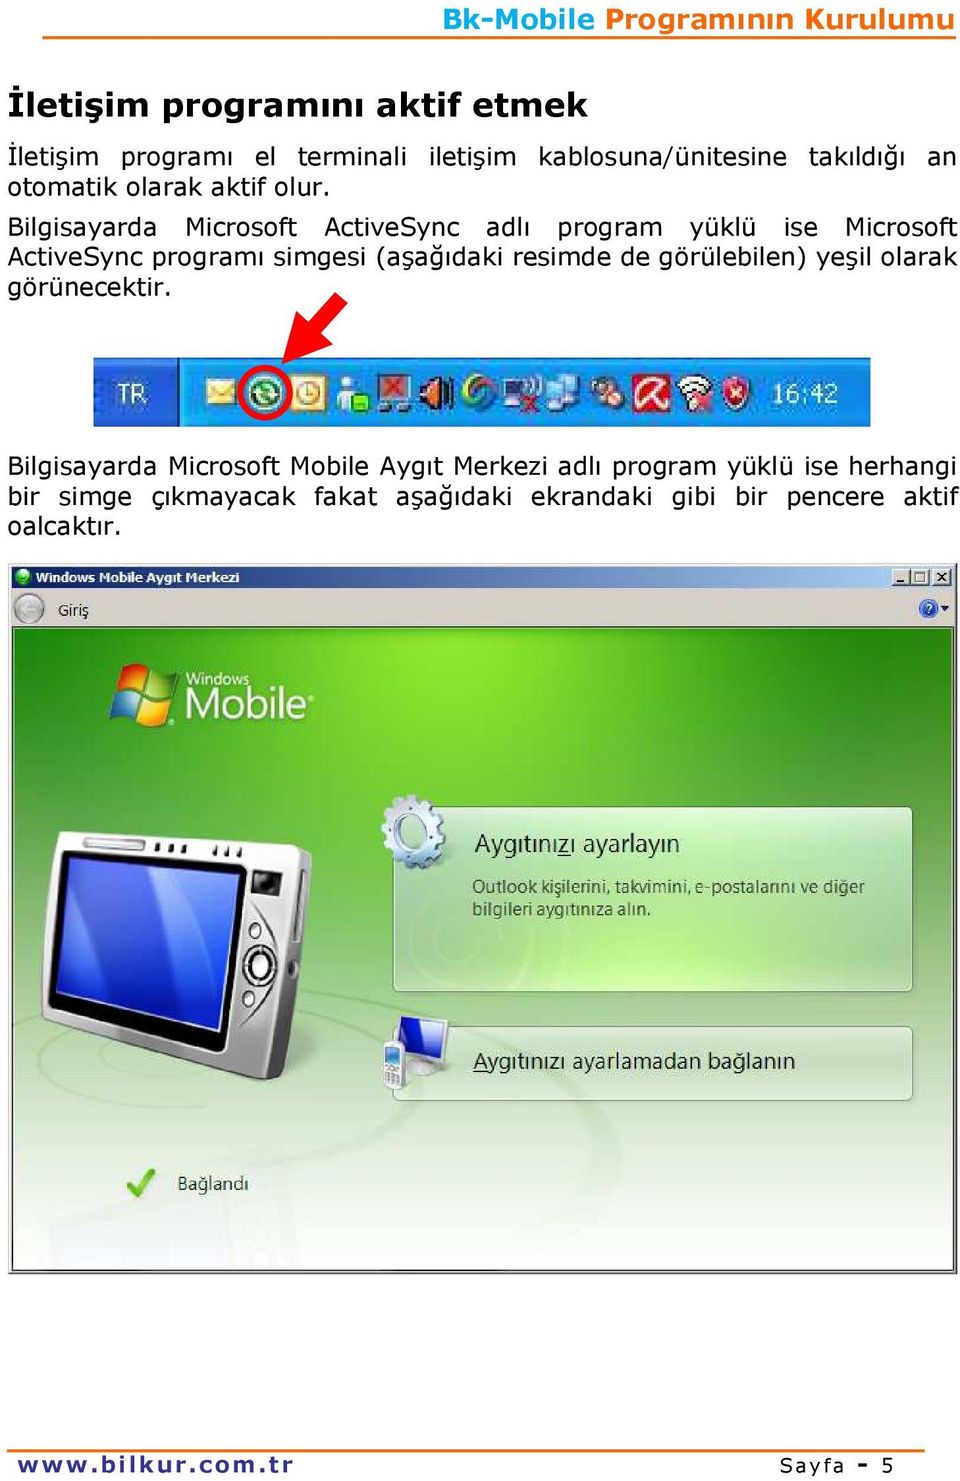 Bilgisayarda Microsoft ActiveSync adlı program yüklü ise Microsoft ActiveSync programı simgesi (aşağıdaki resimde de